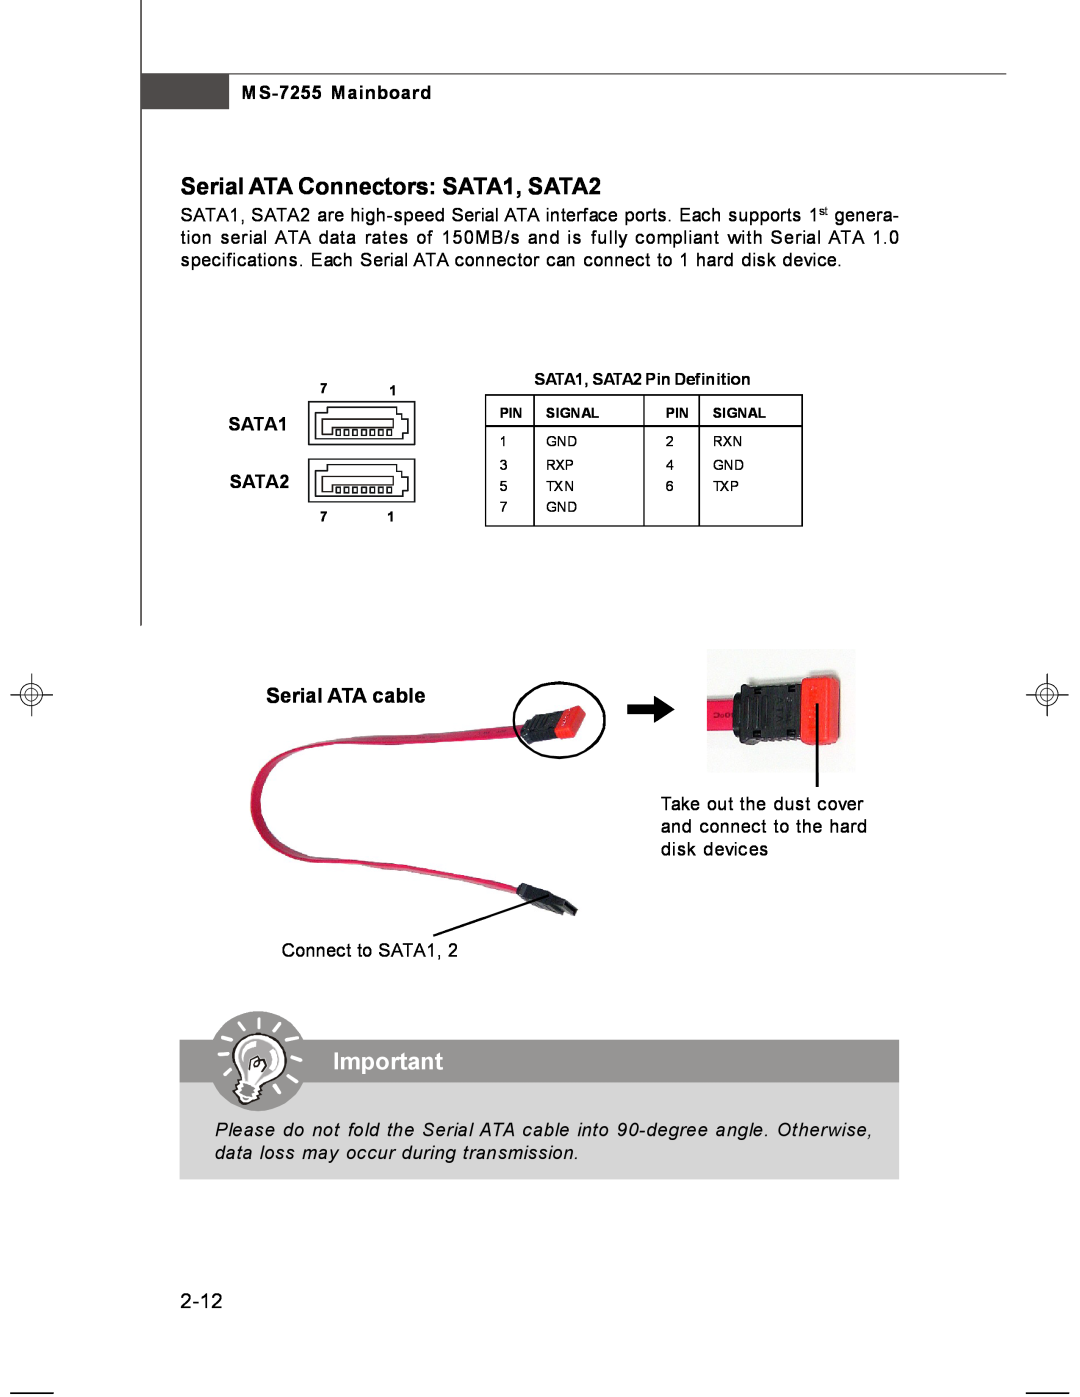 MSI manual Serial ATA Connectors SATA1, SATA2, 2-12, SATA1 SATA2, Serial ATA cable, MS-7255 Mainboard 